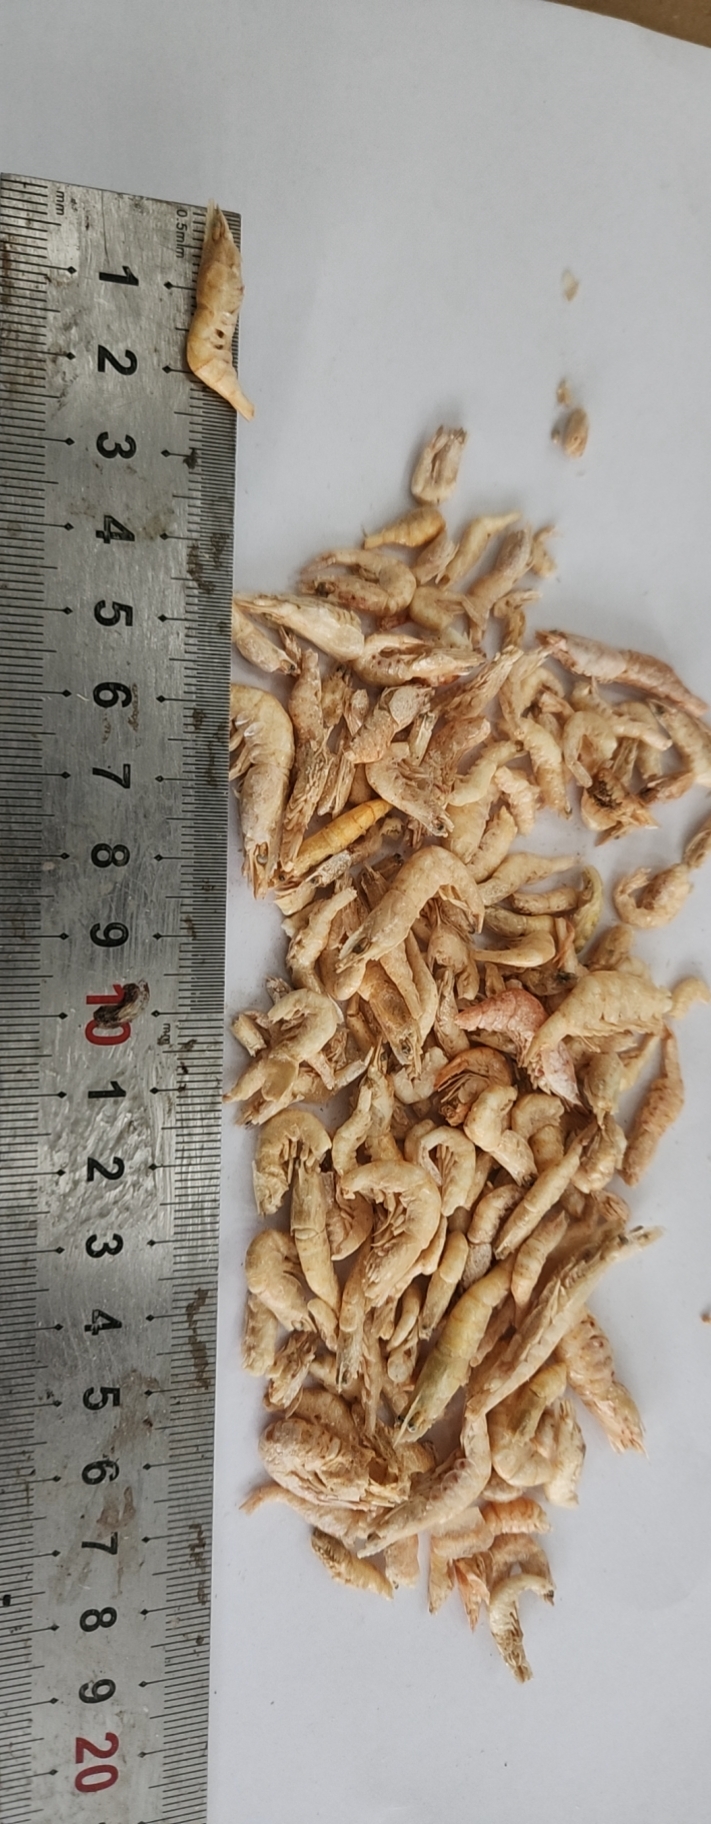 Freeze dried shrimps1-2cm